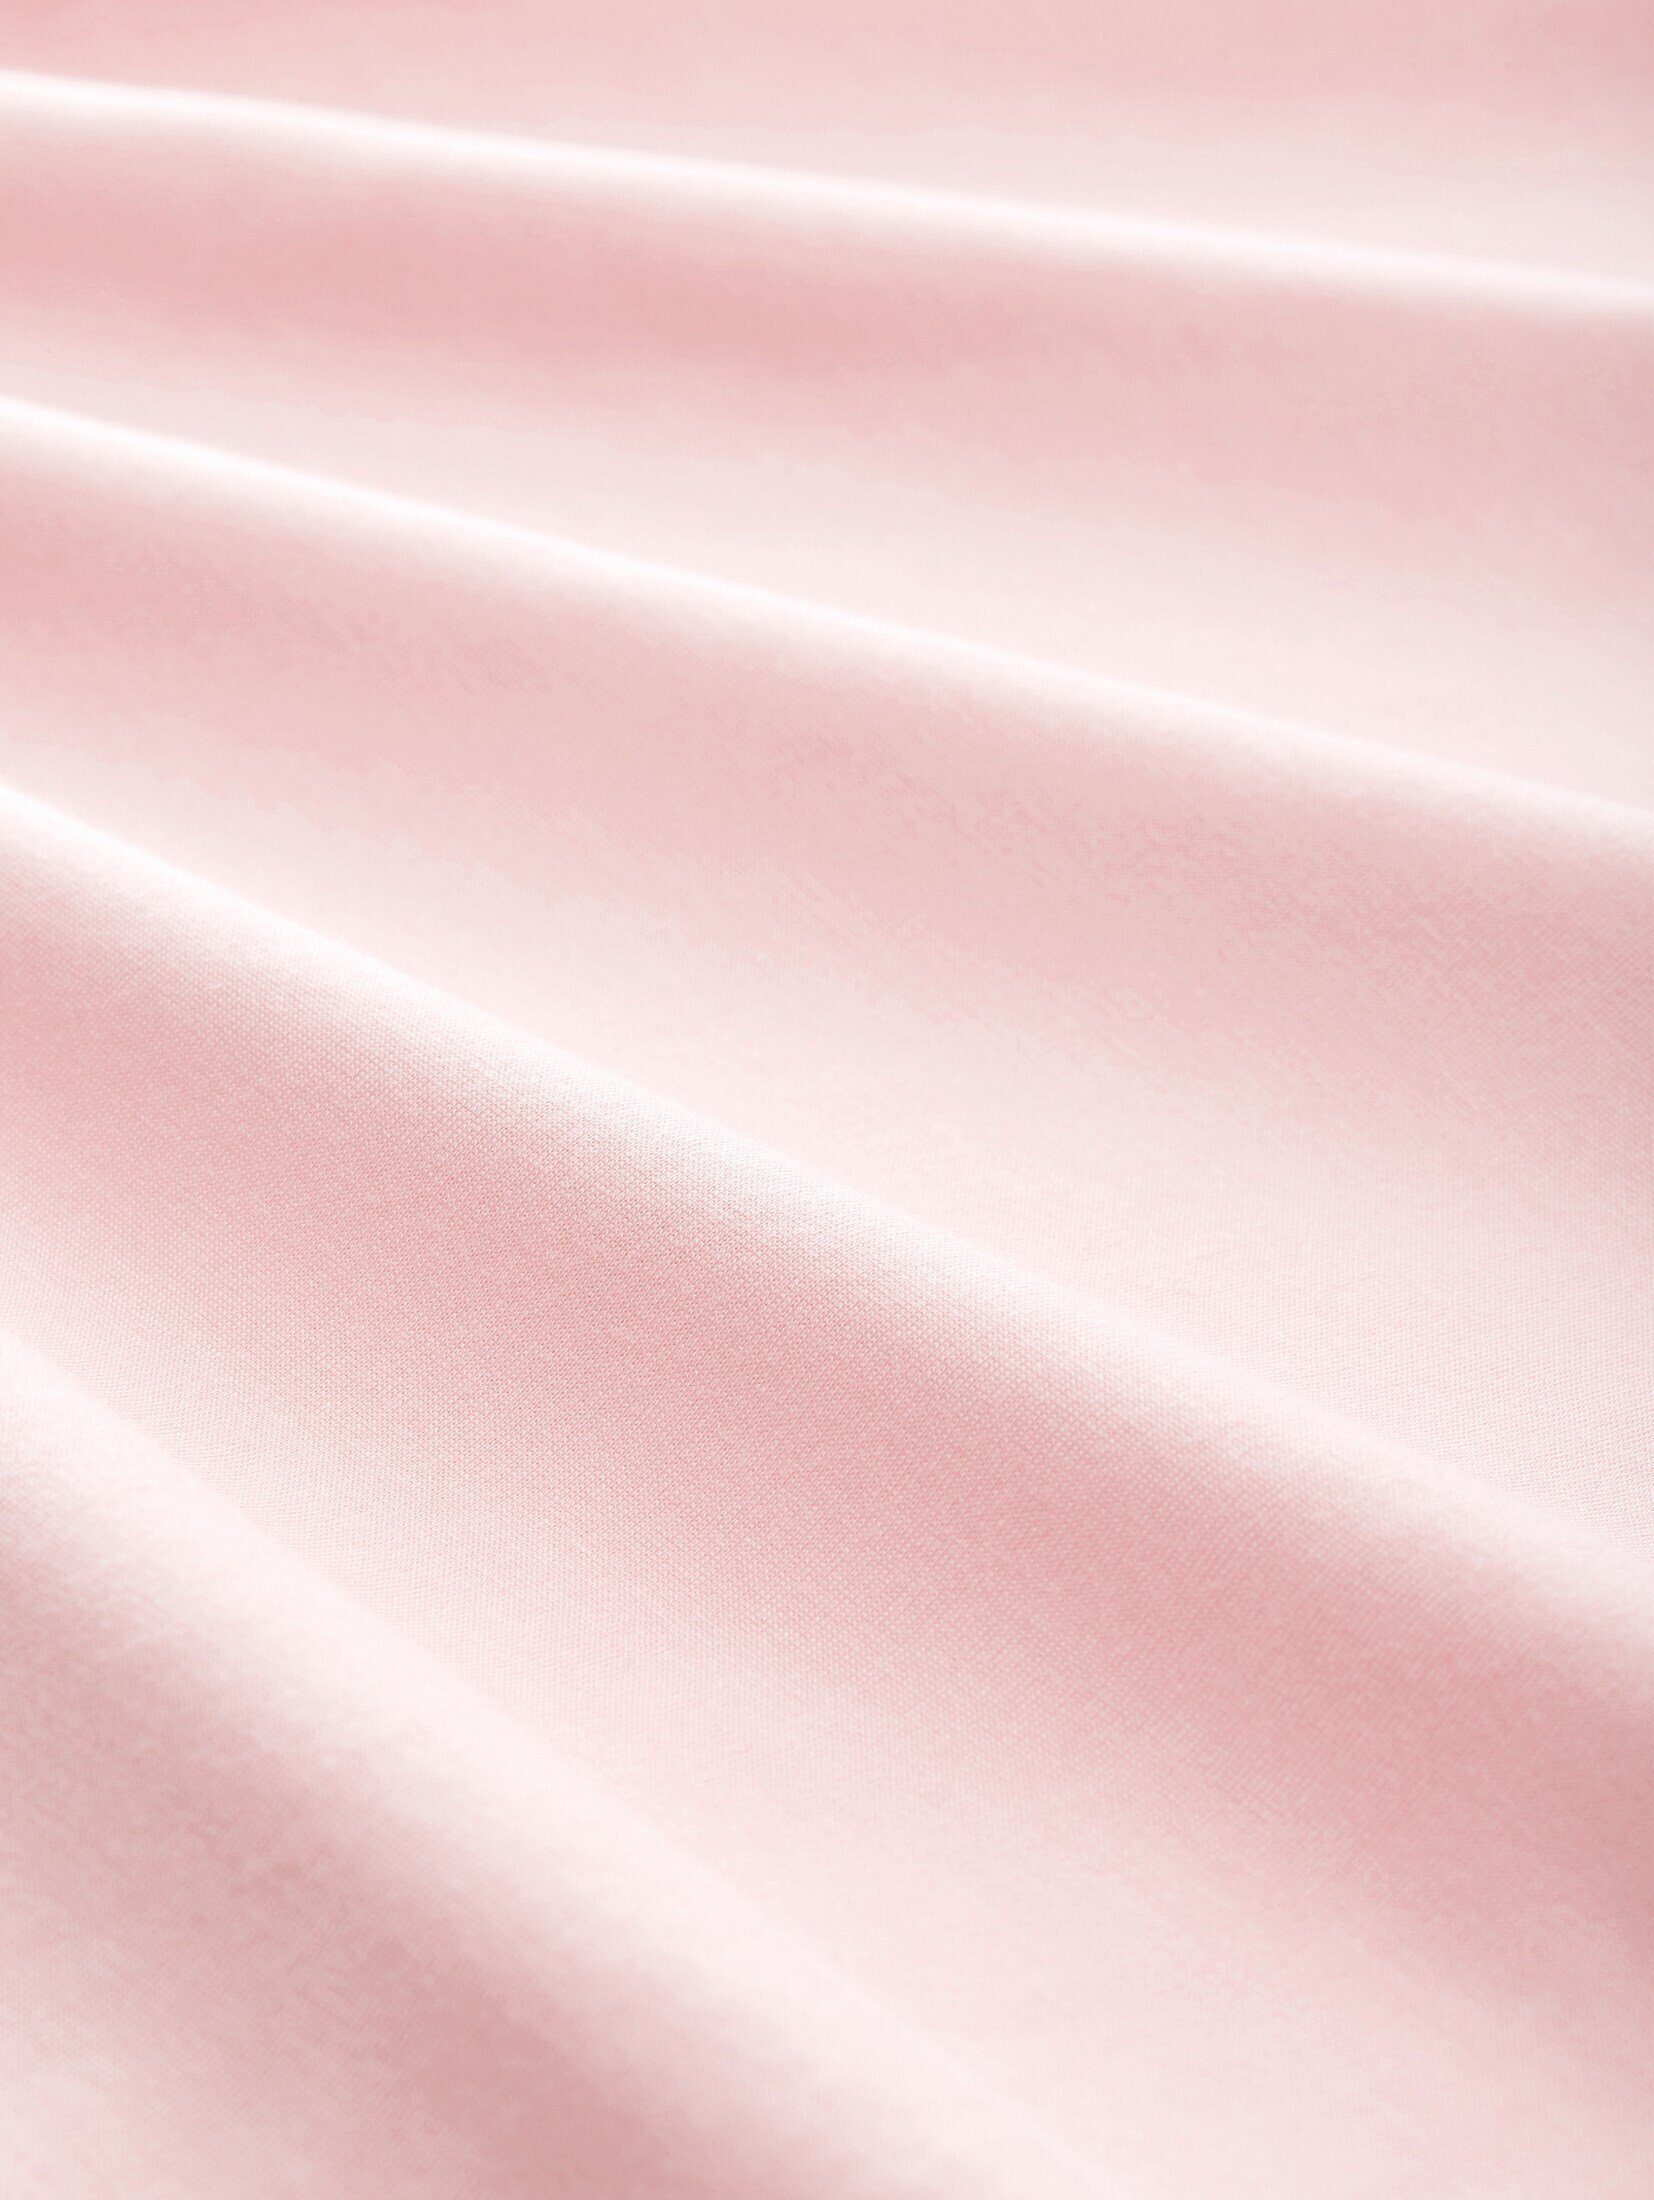 T-Shirt soft pink TAILOR Denim Langarmshirt Basic TOM